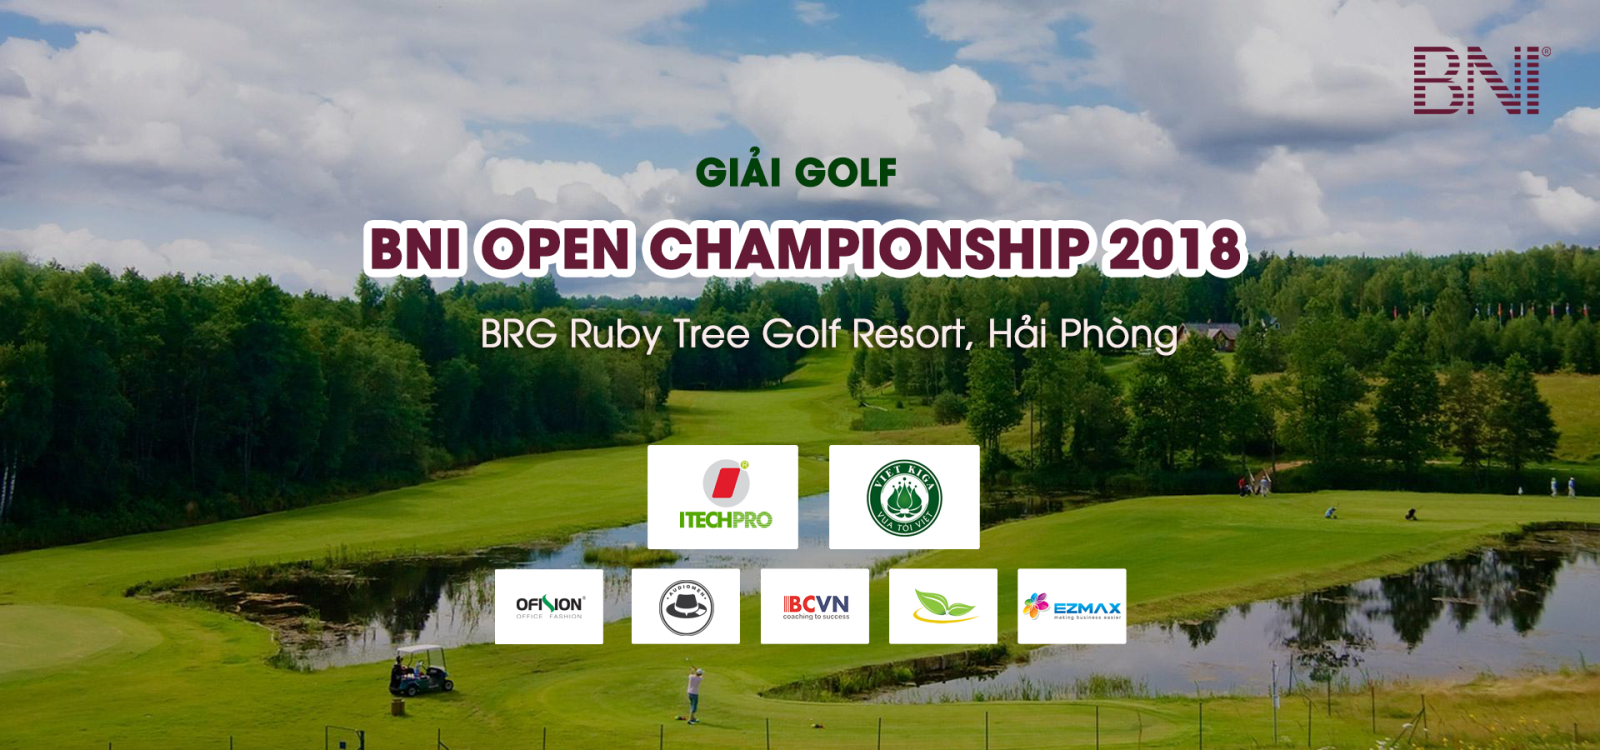 BNI Open Championship 2018: Môi trường giao lưu, kết nối kinh doanh giữa các doanh nghiệp